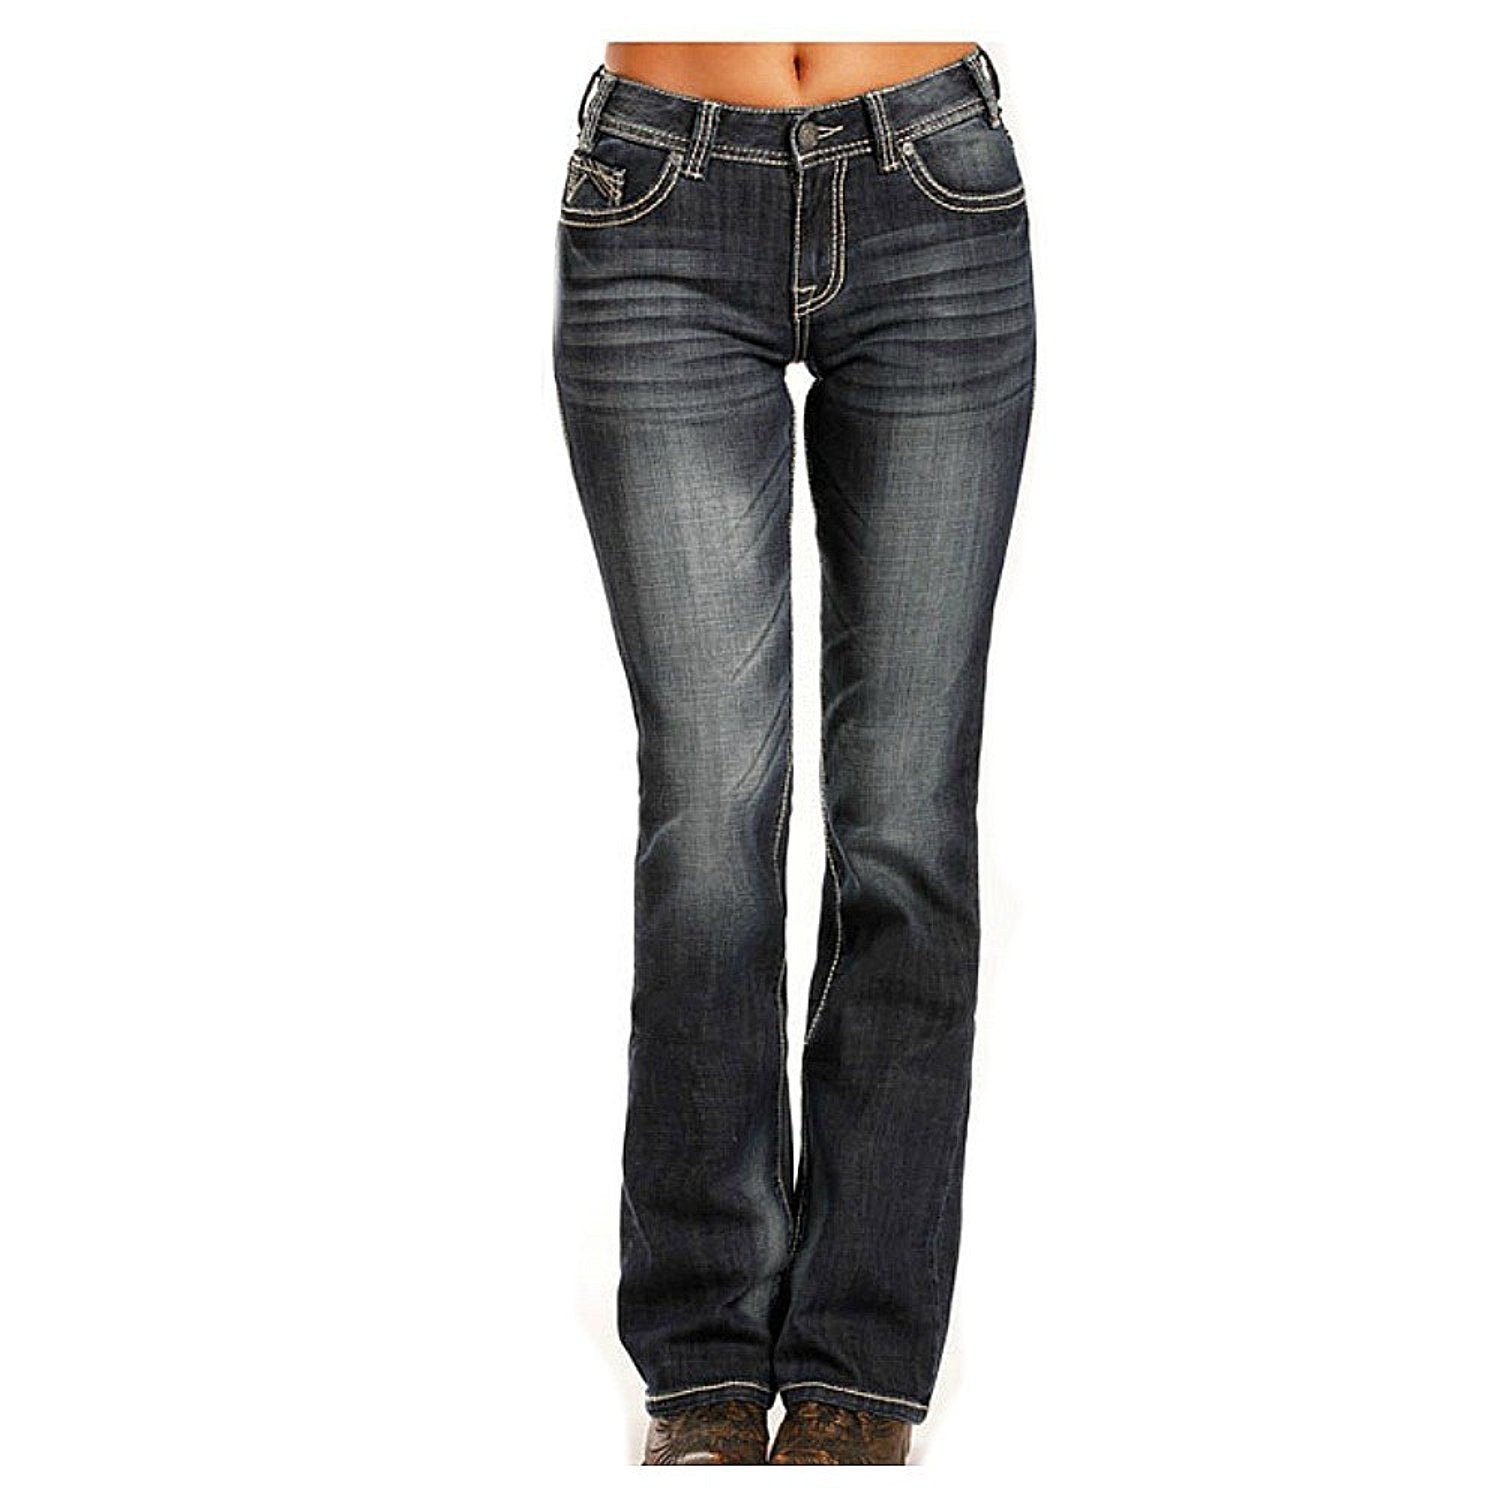 Ariat Women's Trouser Leg Scarlet Jeans - 10018819 – Jeb's Western ...